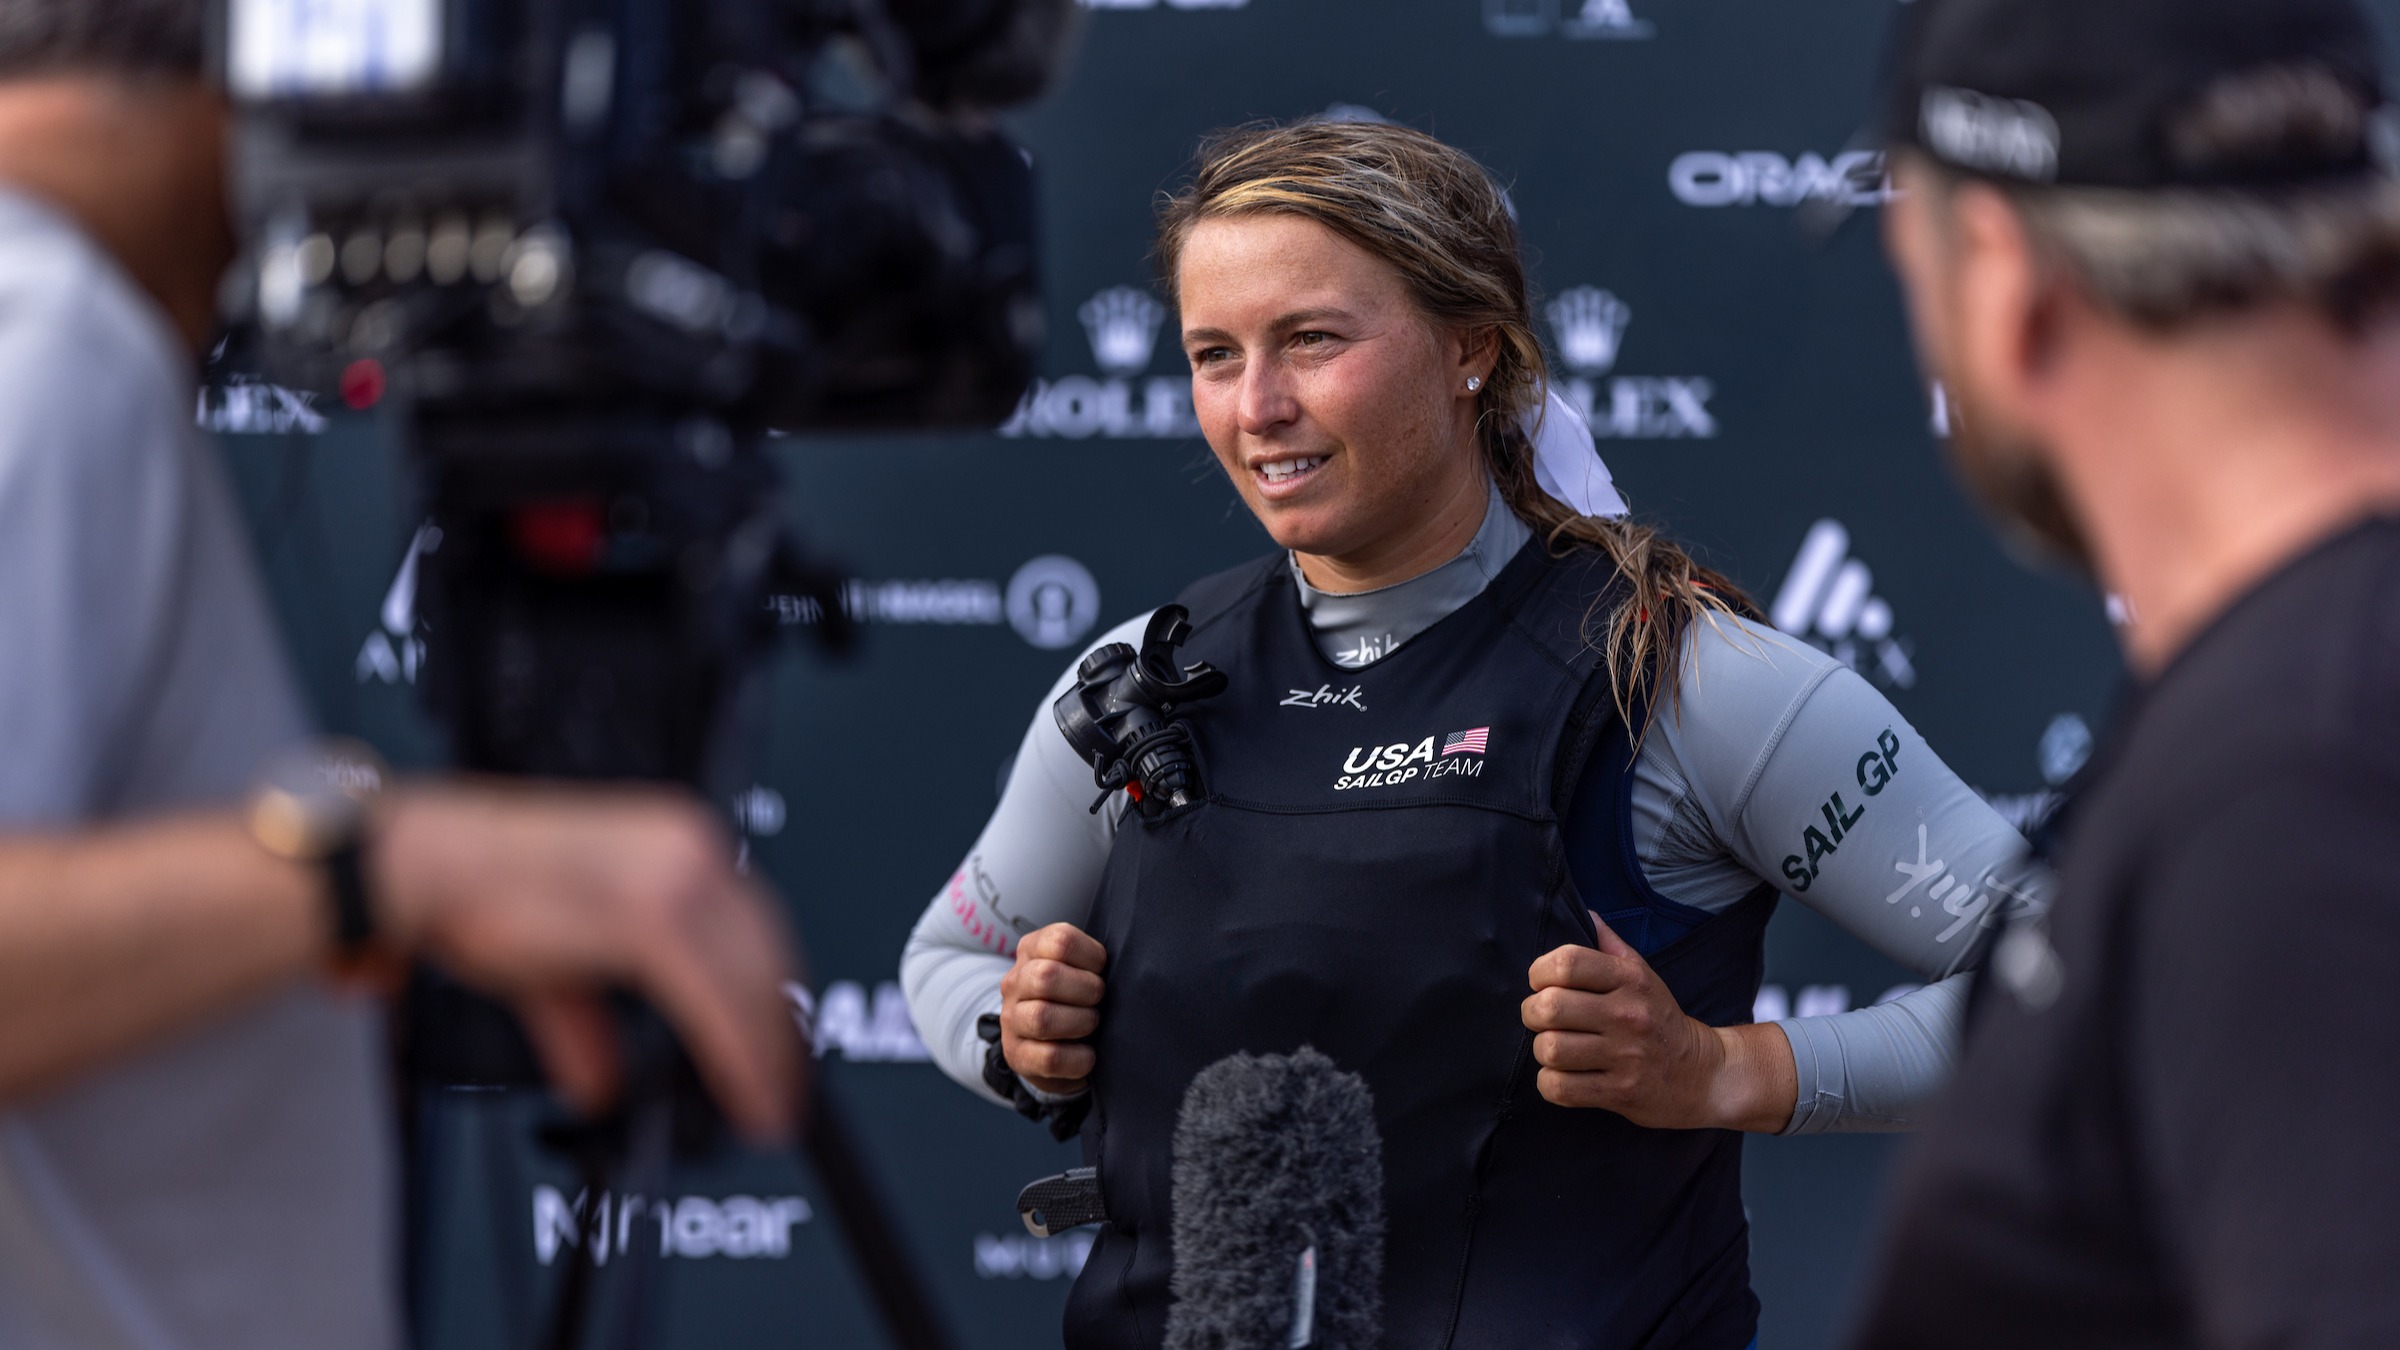 Season 4 // U.S. strategist Erika Reineke talks to media after racing in Cadiz 